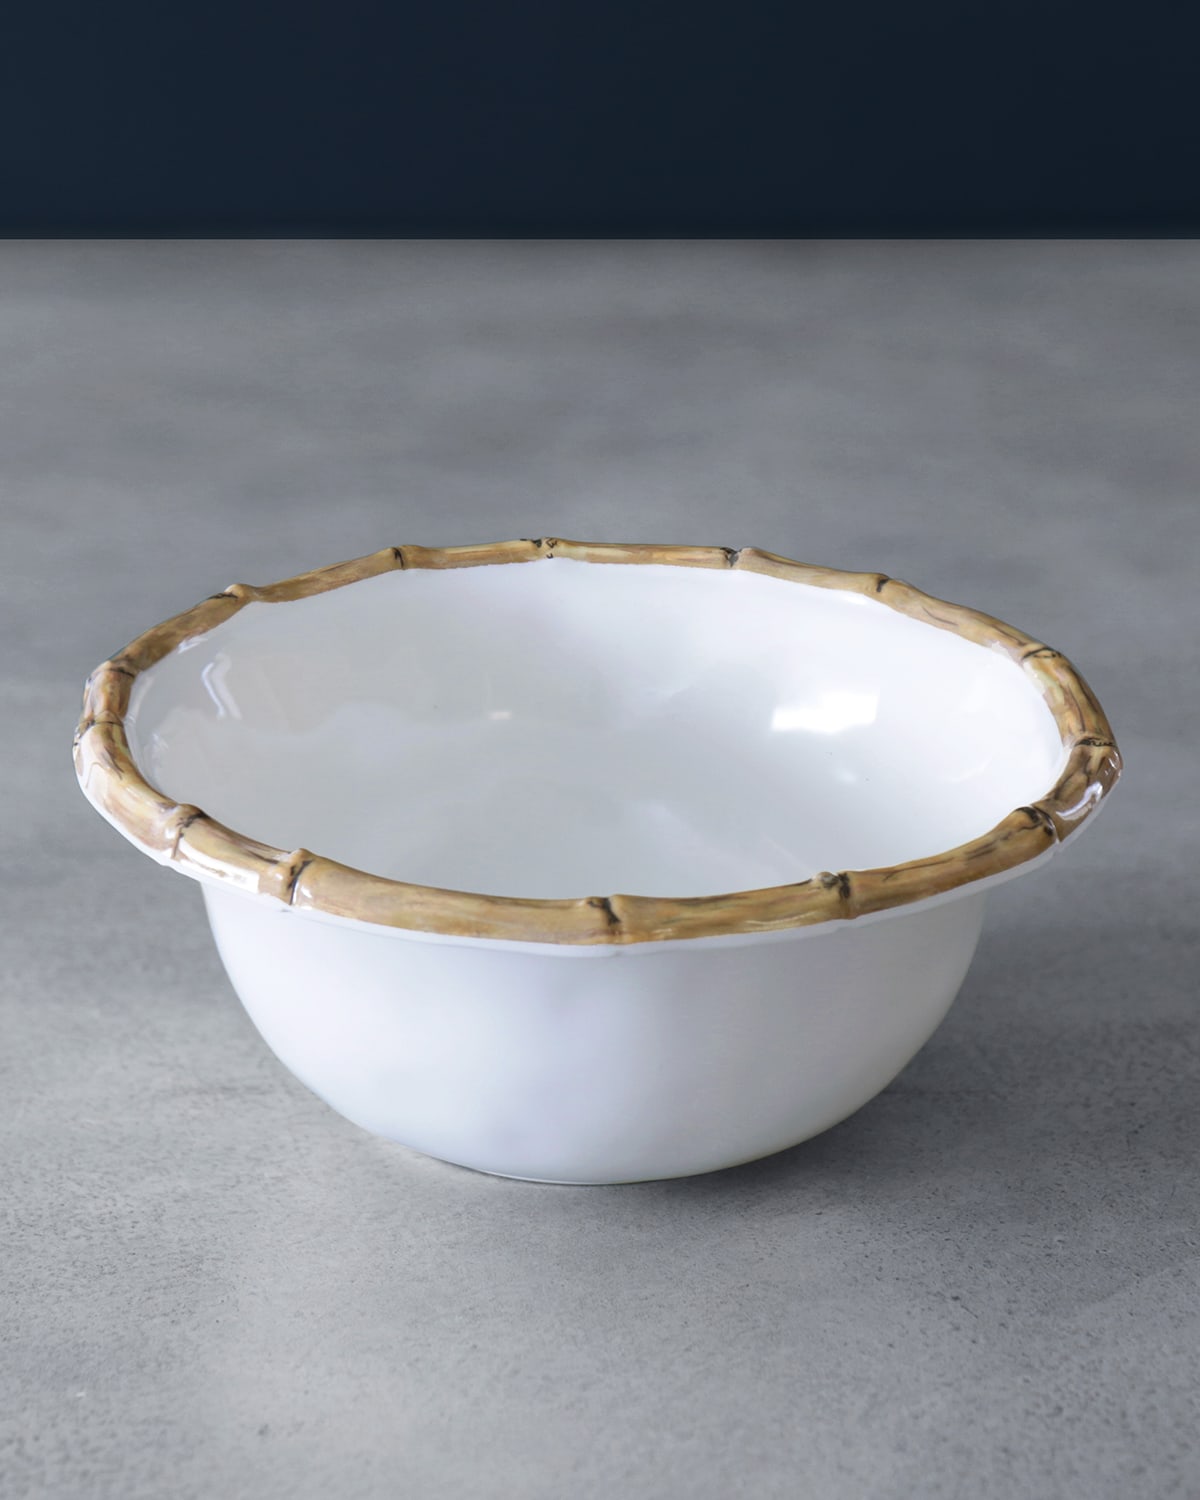 VIDA Bamboo 7.5" Cereal Bowls, Set of 4 (White and Natural)